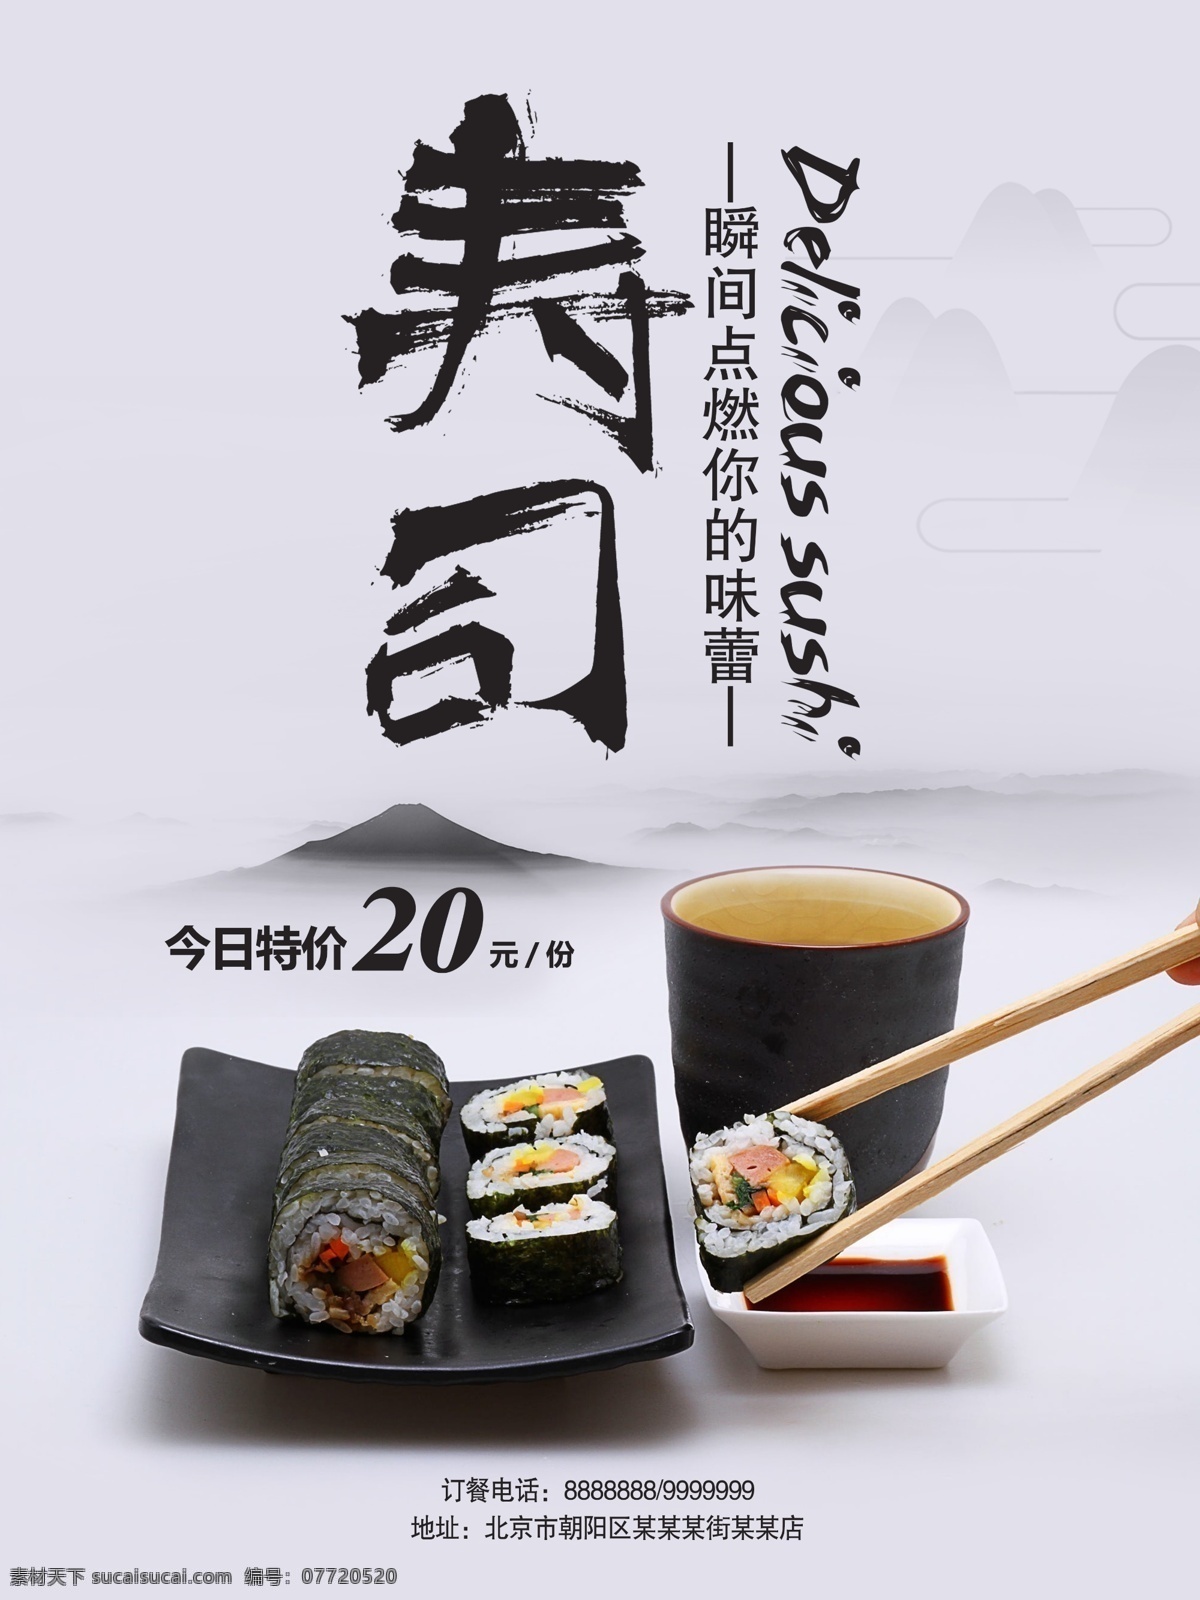 日本 寿司 传统 美食 海报 模板 寿司海报设计 中国 风 背景 中国风背景 古风海报 古风食品海报